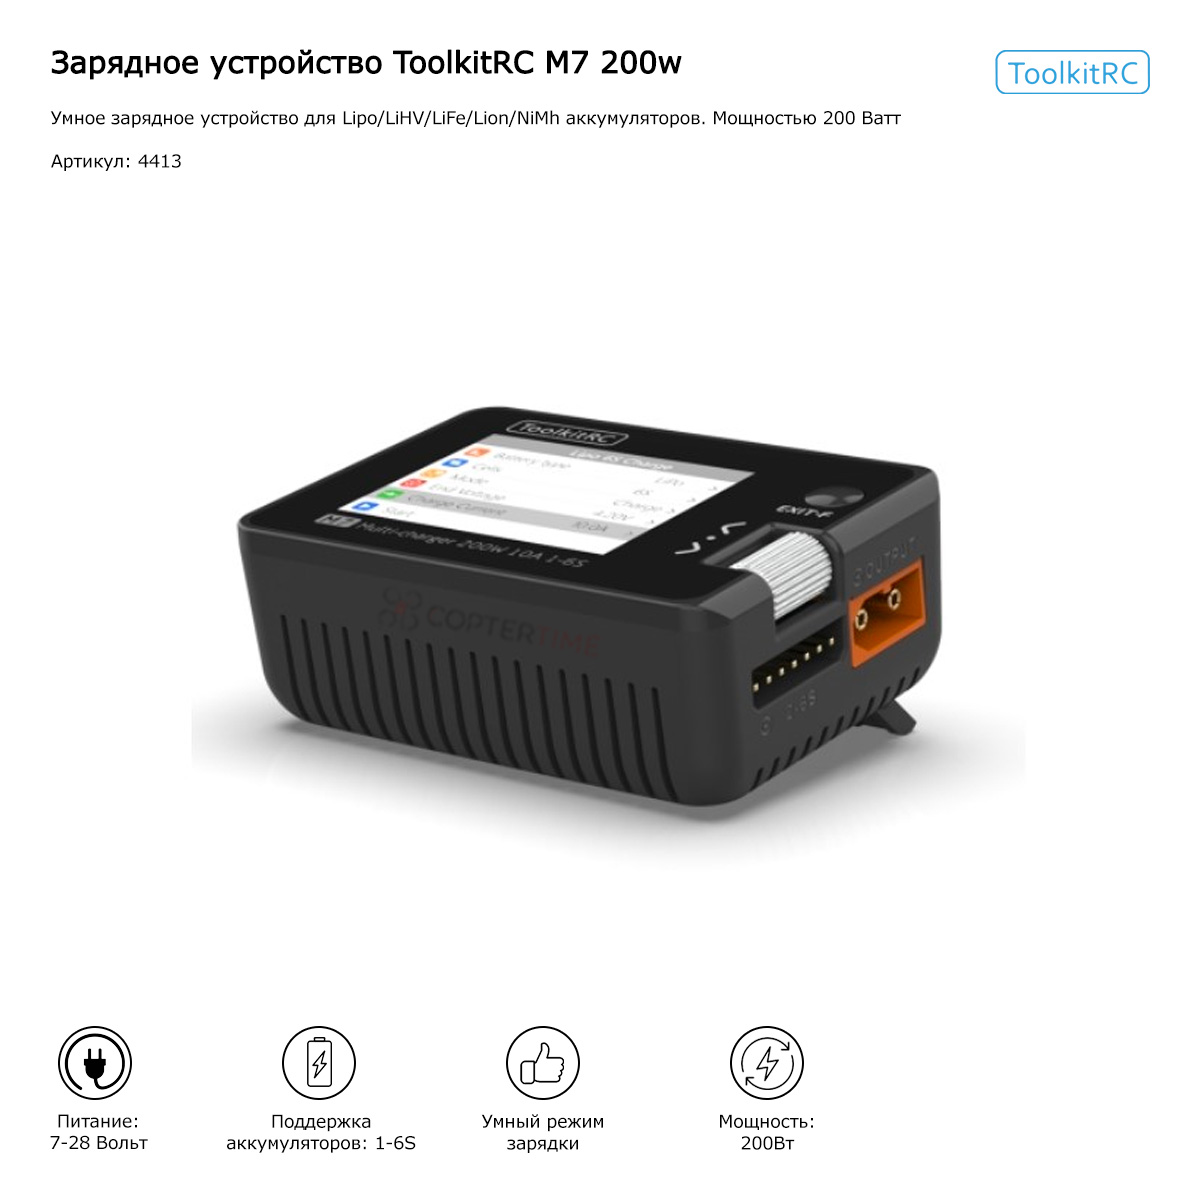 Зарядное устройство ToolkitRC M7 200w